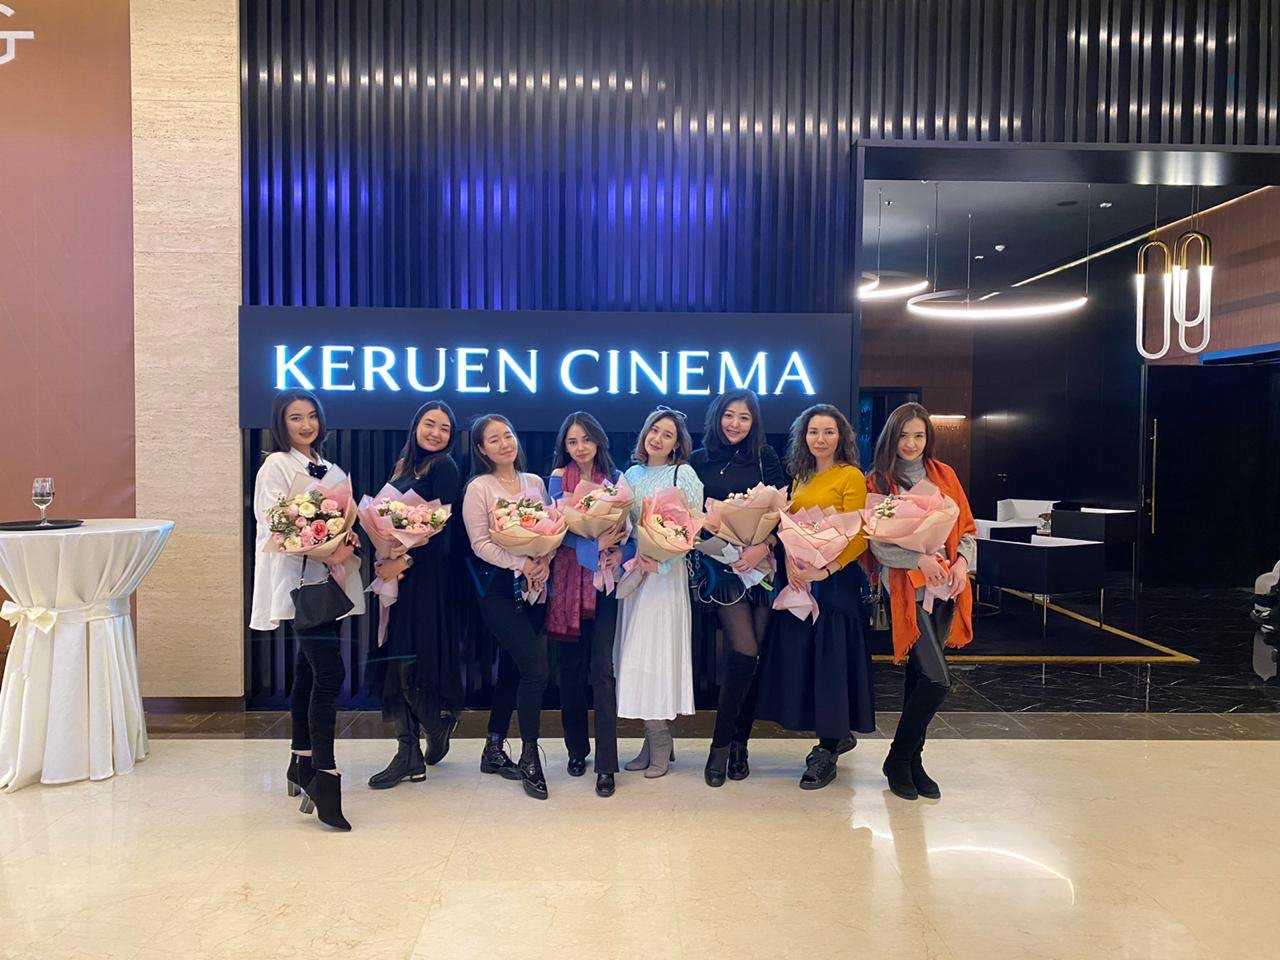 Keruen Cinema фото 1